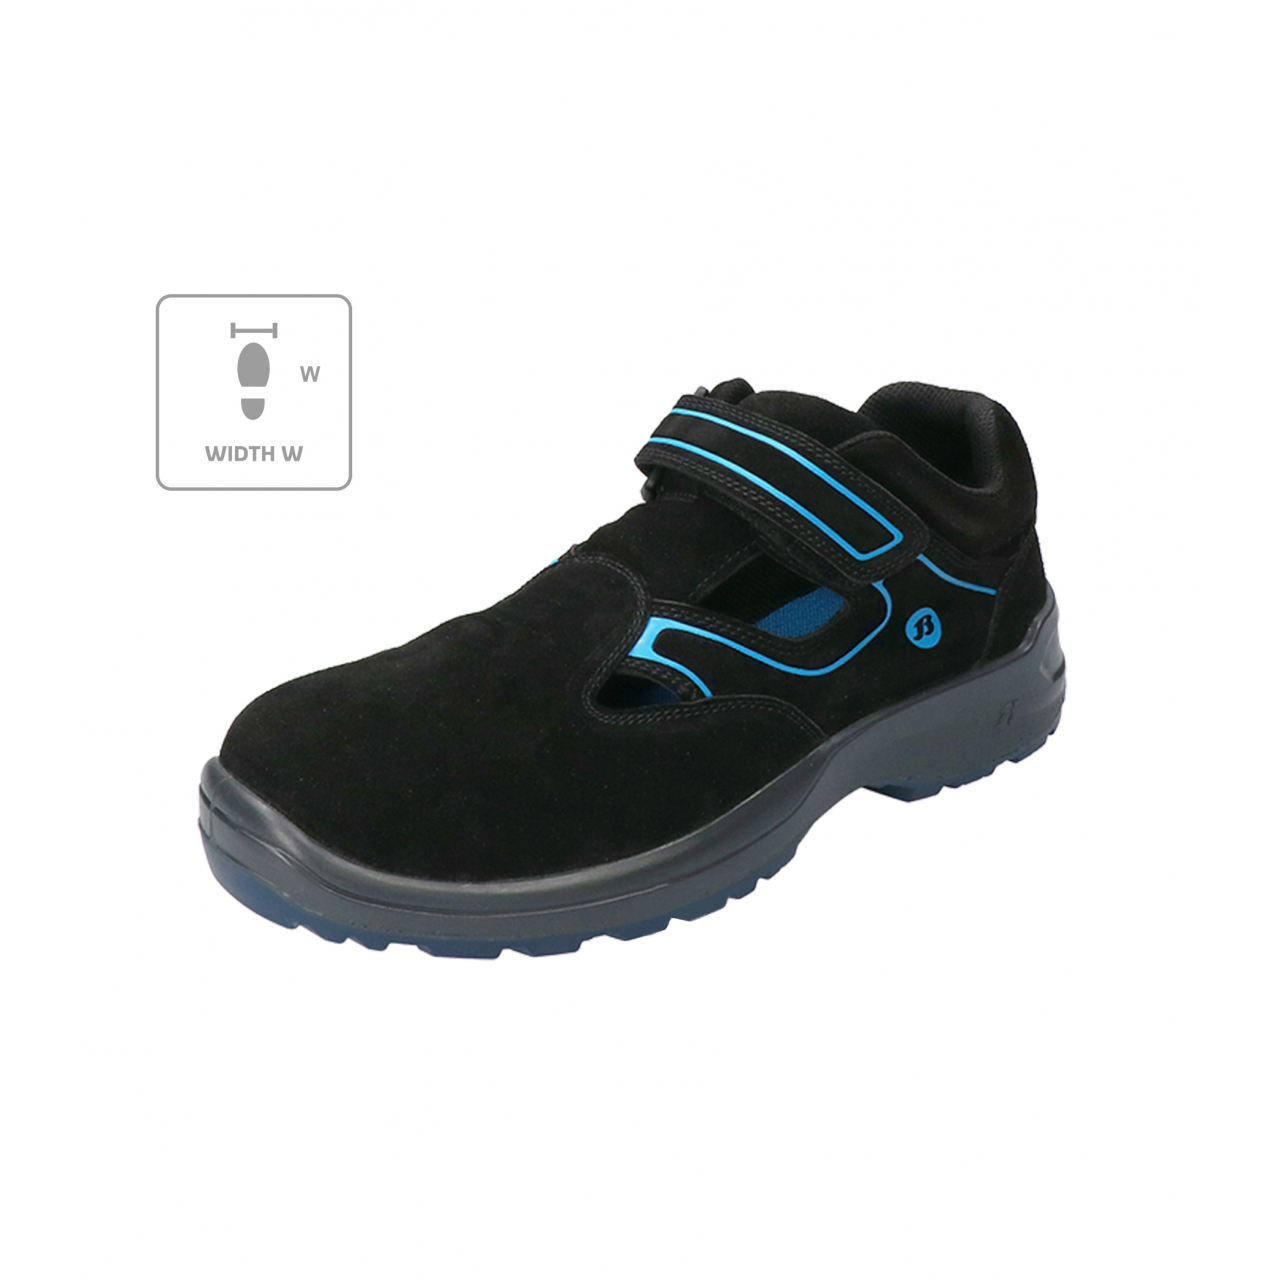 Sandále Bata Industrials Falcon ESD W - černé-modré, 36